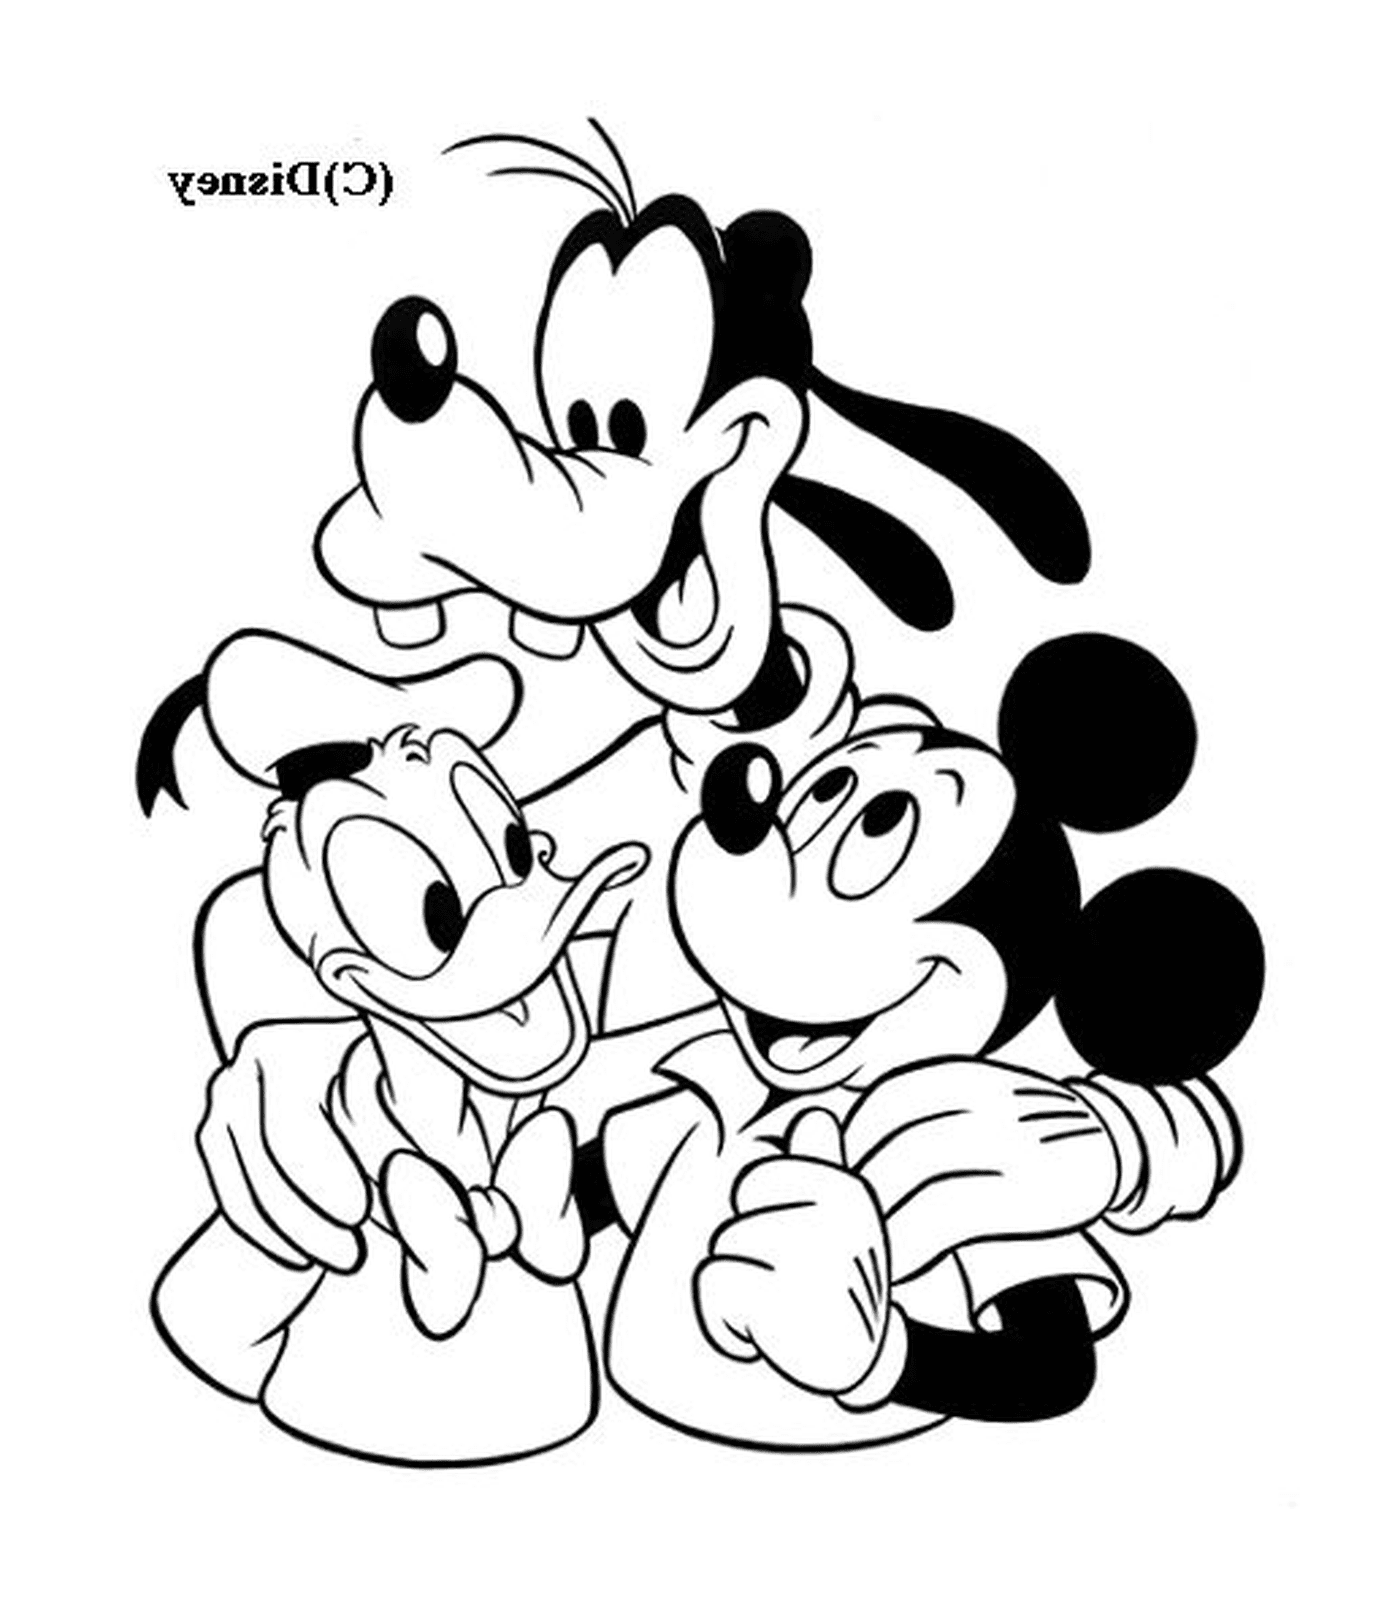  Topolino con i suoi amici Dingo e Donald 